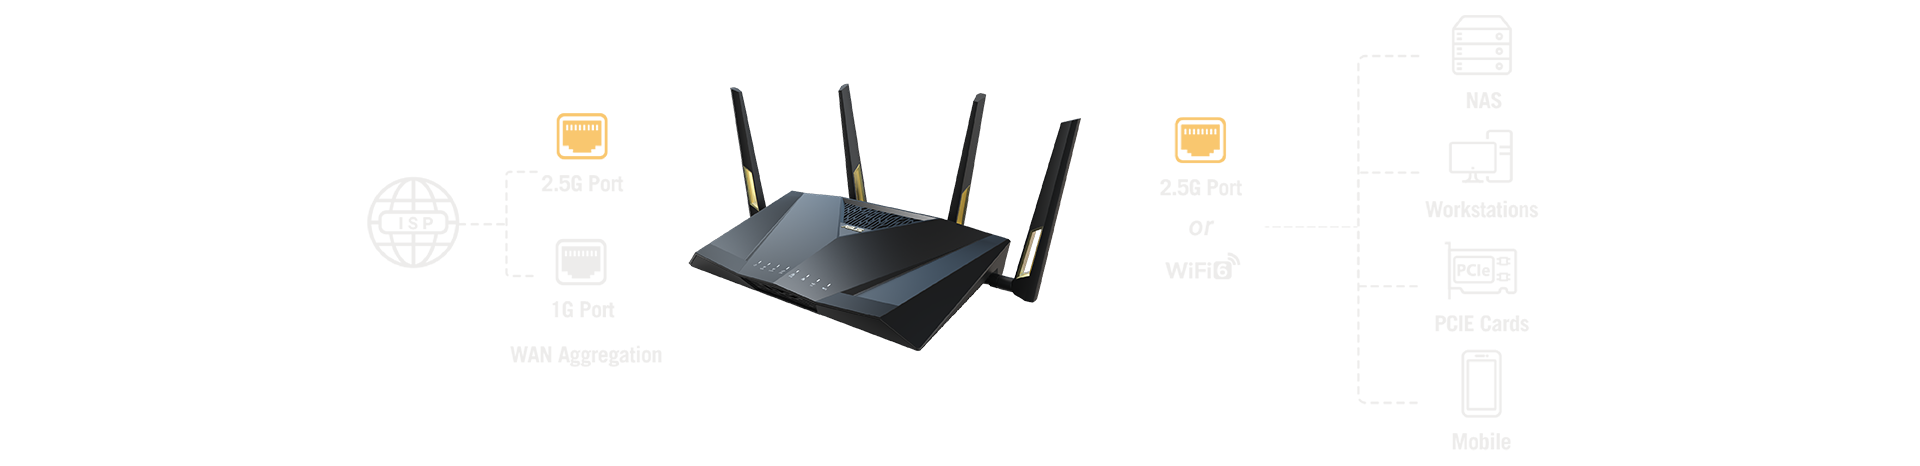 Vďaka agregácii WAN môžete skombinovať port s rýchlosťou 2,5 Gb/s a port s rýchlosťou 1 Gb/s, čím získate šírku pásma WAN až 3,5 Gb/s - dostatočne rýchlu pre najnovšie ultrarýchle pripojenia od poskytovateľov internetových služieb.